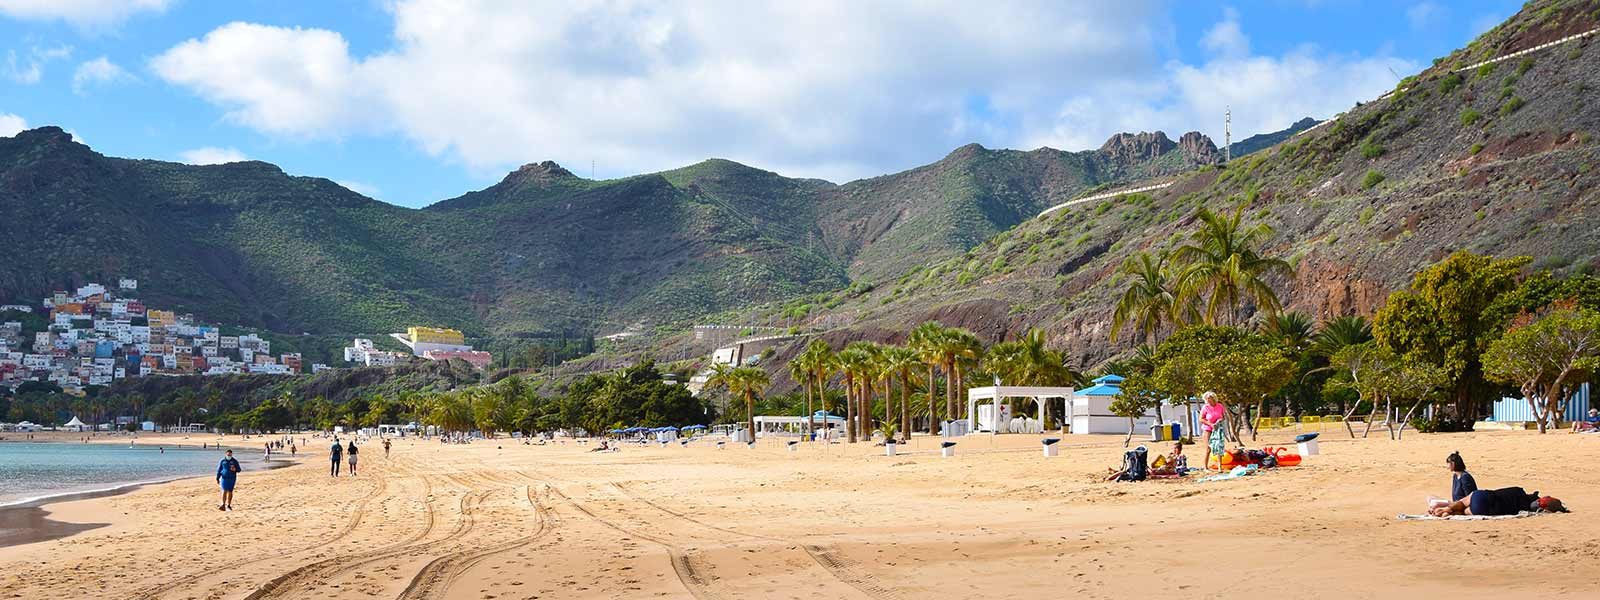 Het mooie strand Las Terresitas in het noorden van Tenerife